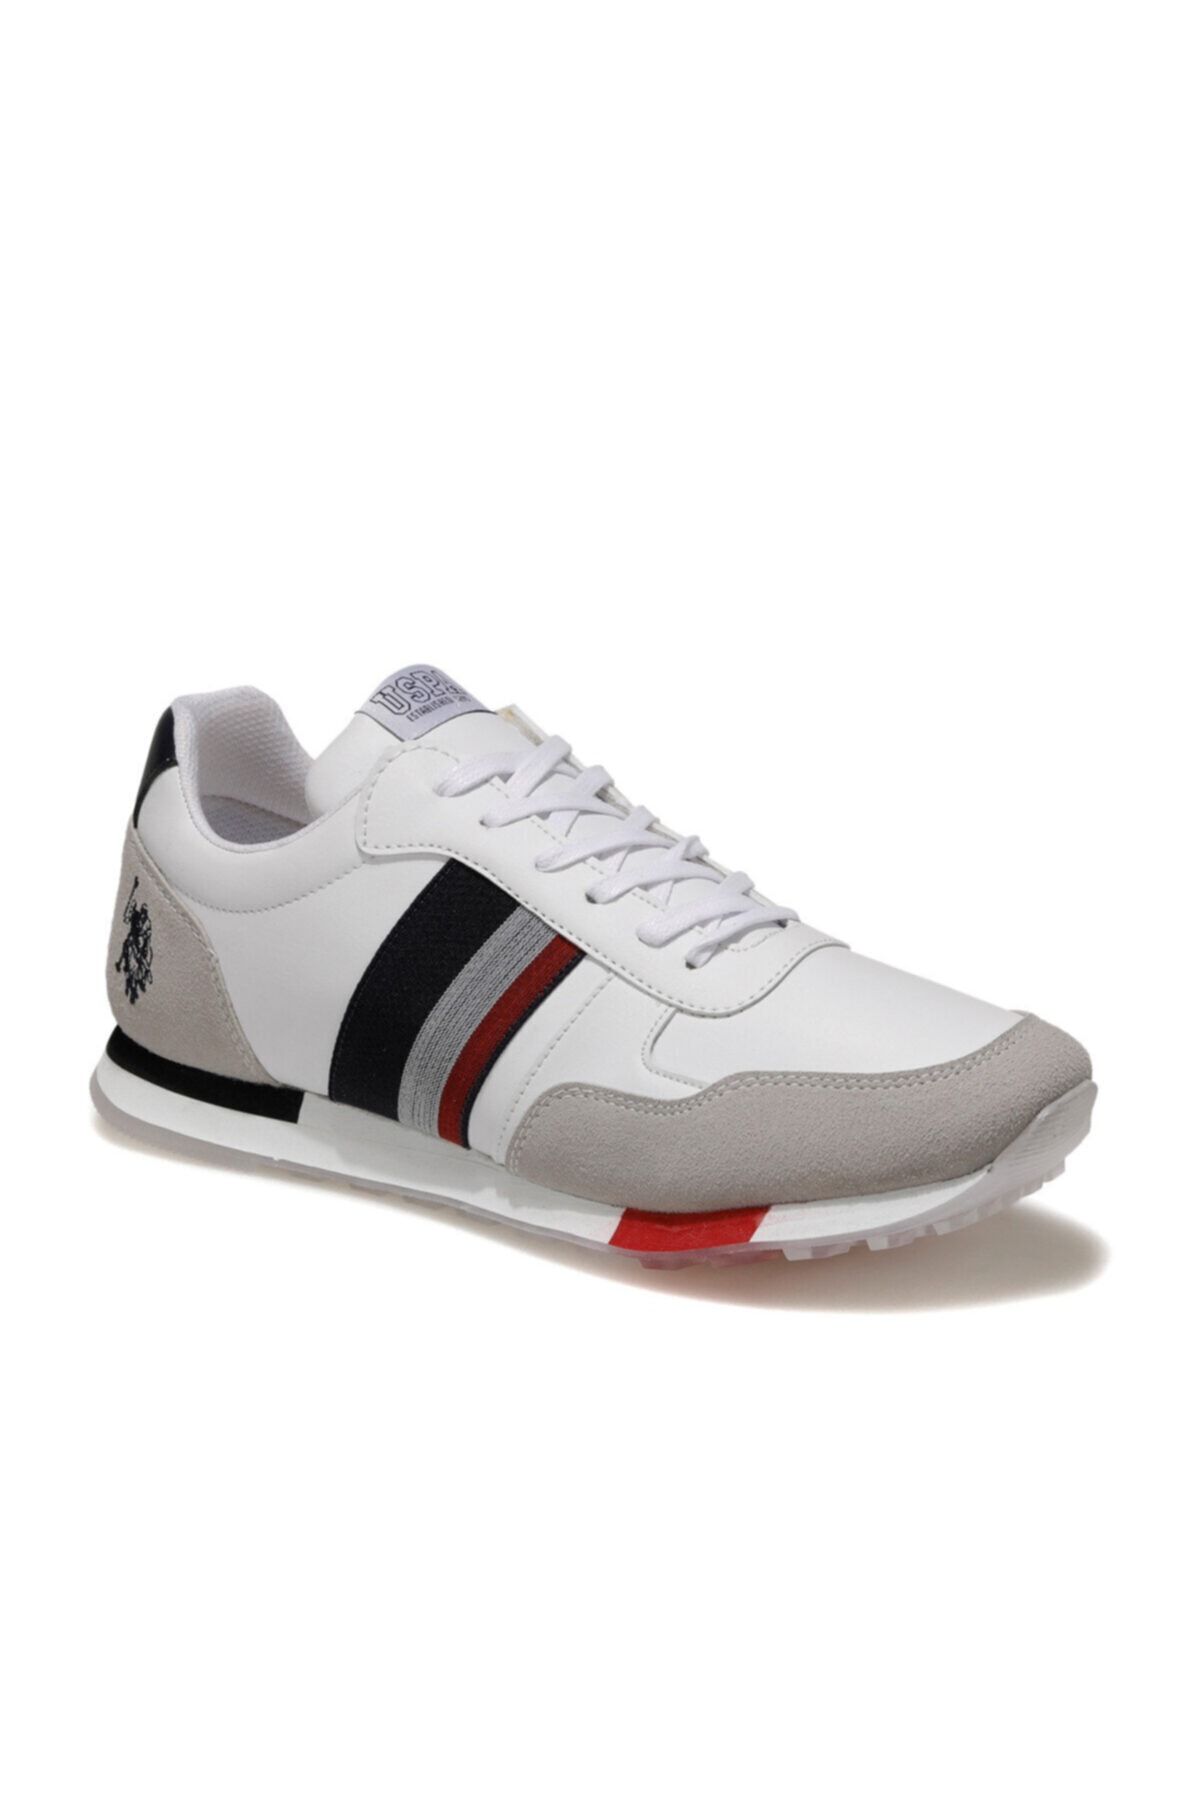 U.S. Polo Assn. BARLIN WT Beyaz Erkek Sneaker Ayakkabı 100551151